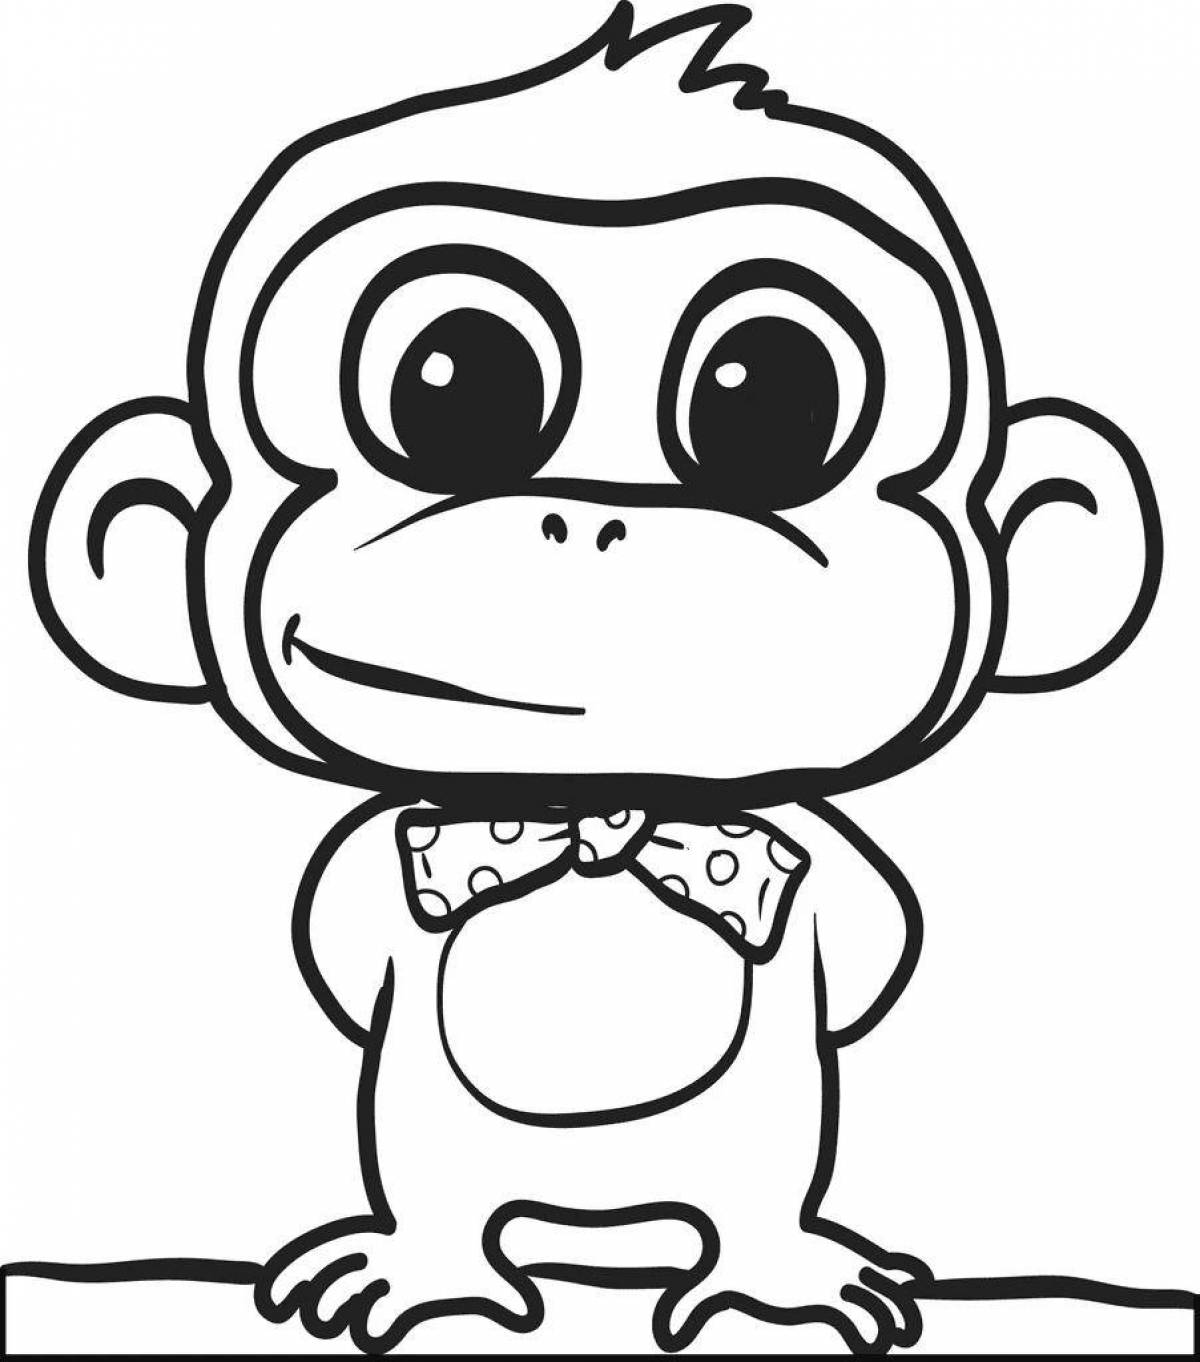 Violent monkey coloring book for kids